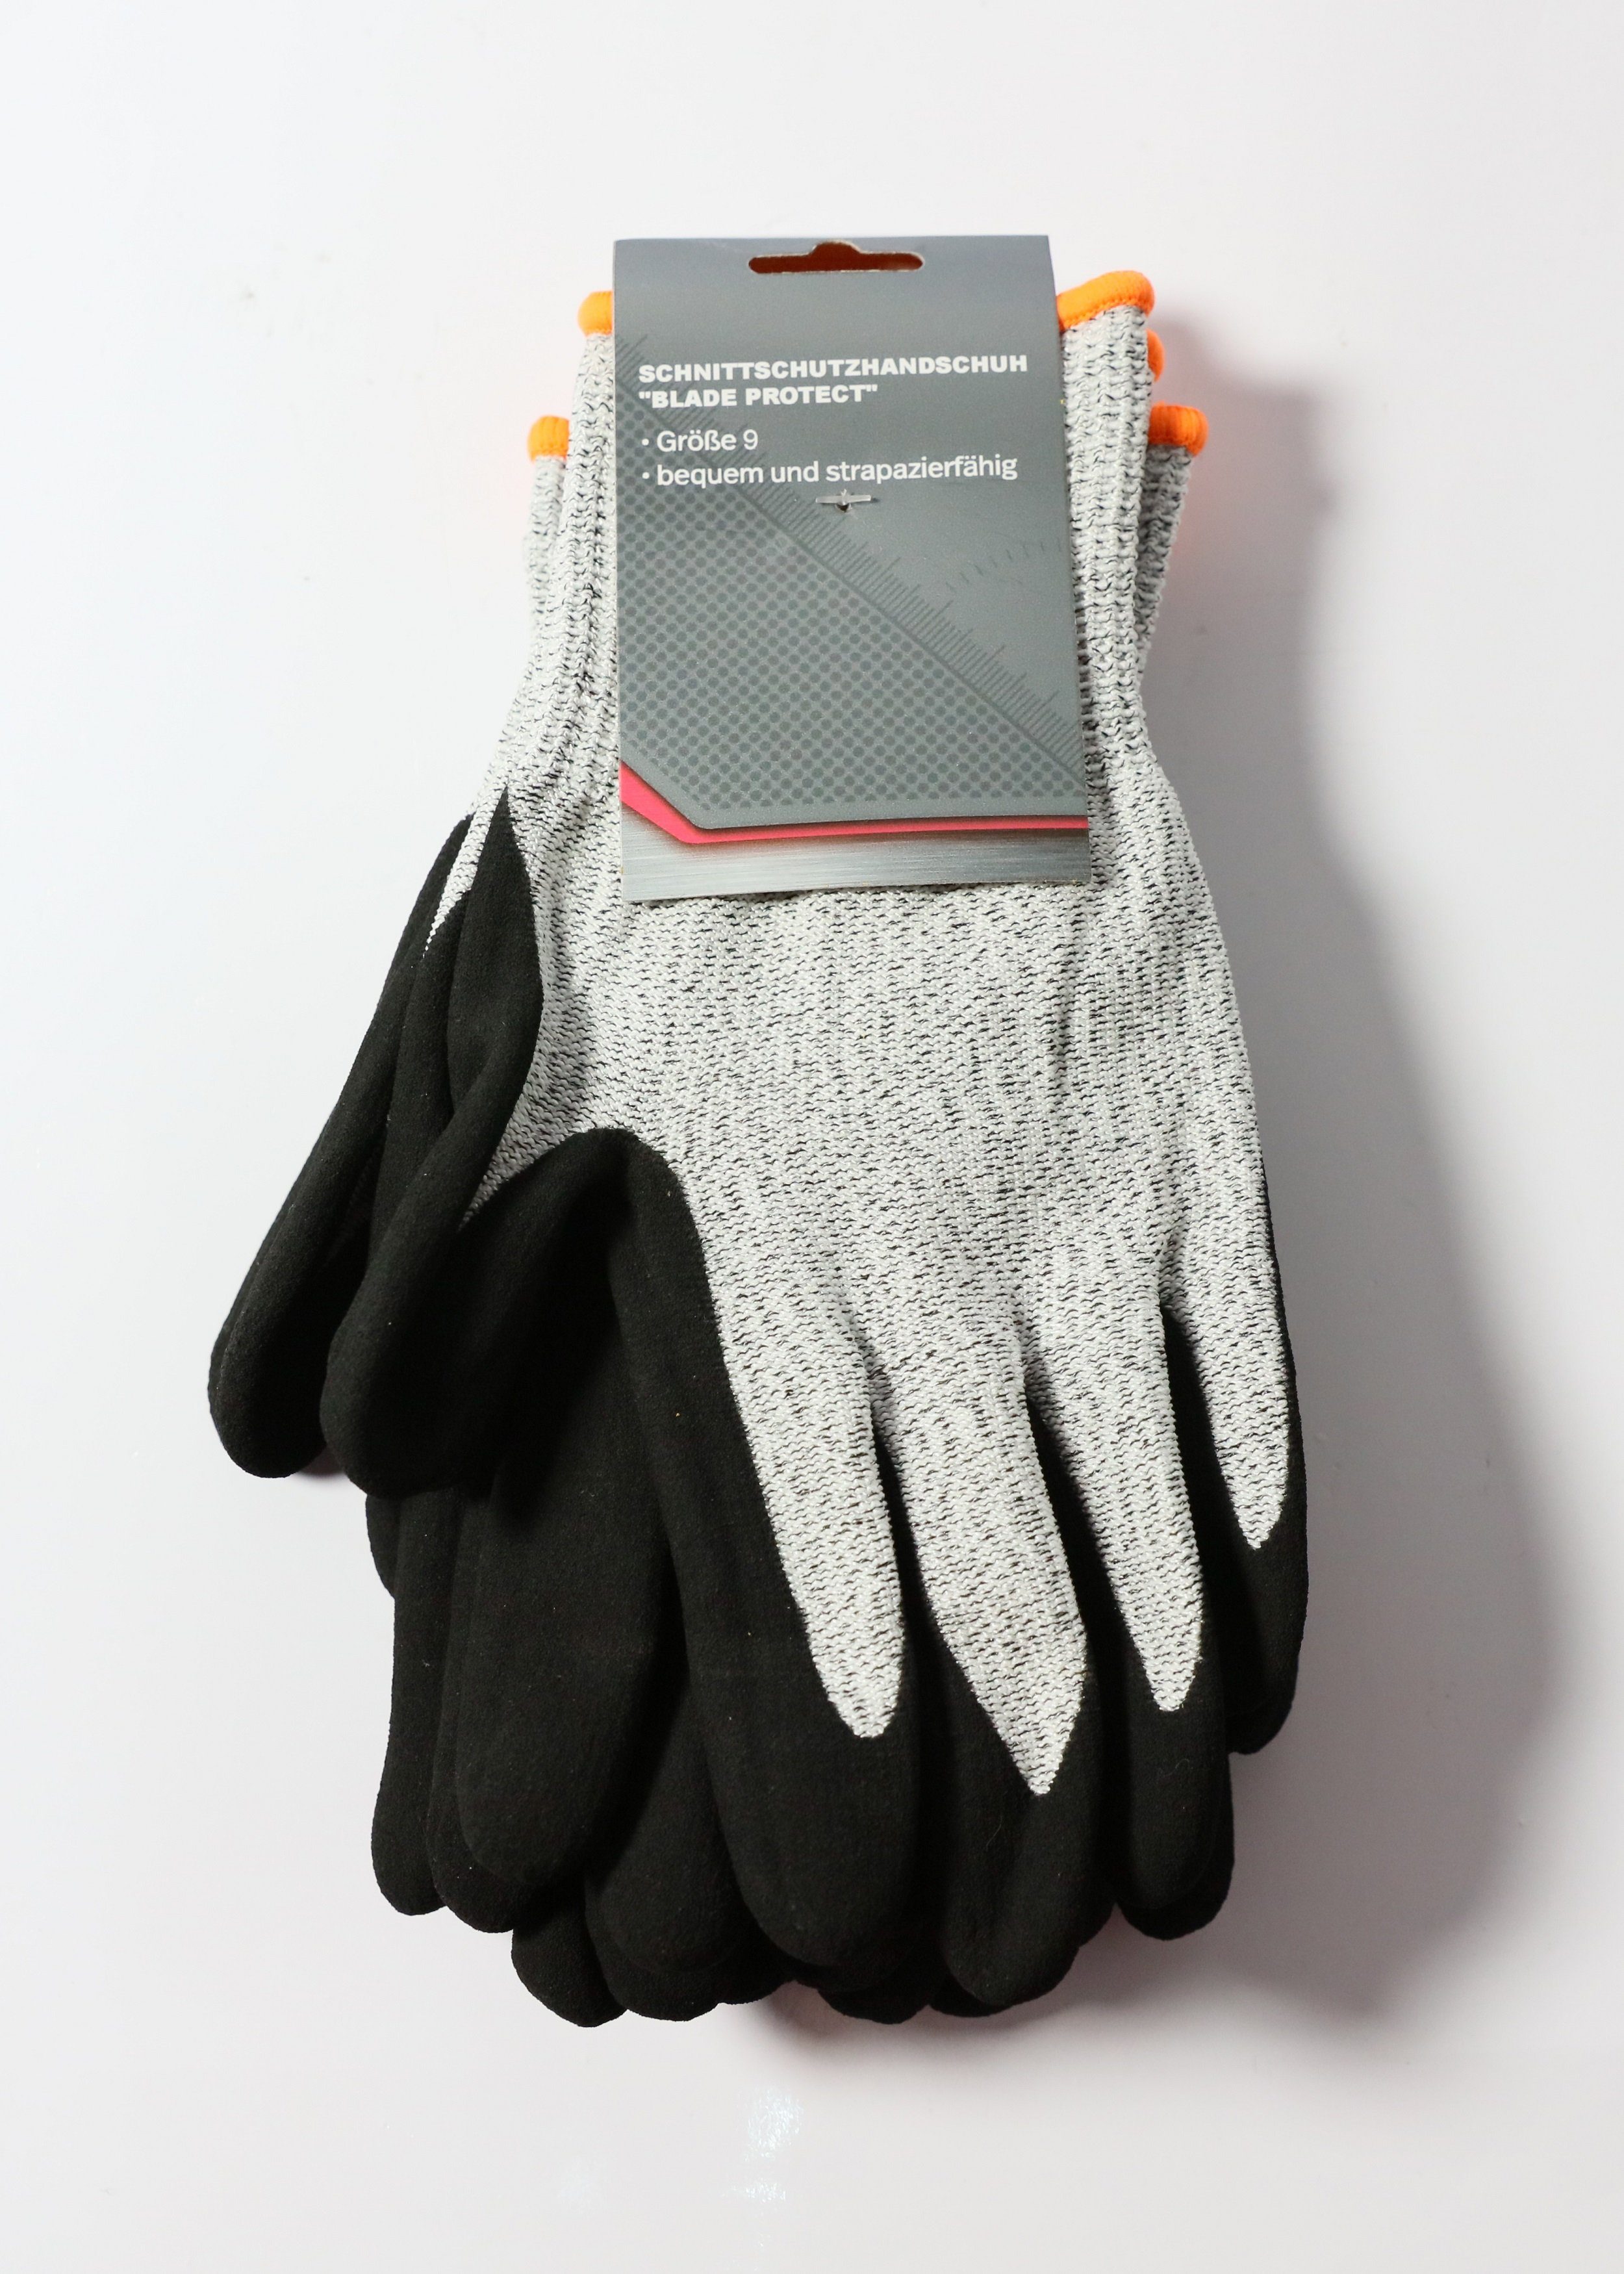 TECH-CRAFT Schnittschutzhandschuhe Schnittschutzhandschuh Protect Gr. Paar 10 Blade 3 Set) 9 Touchscreen-Finger x (10er